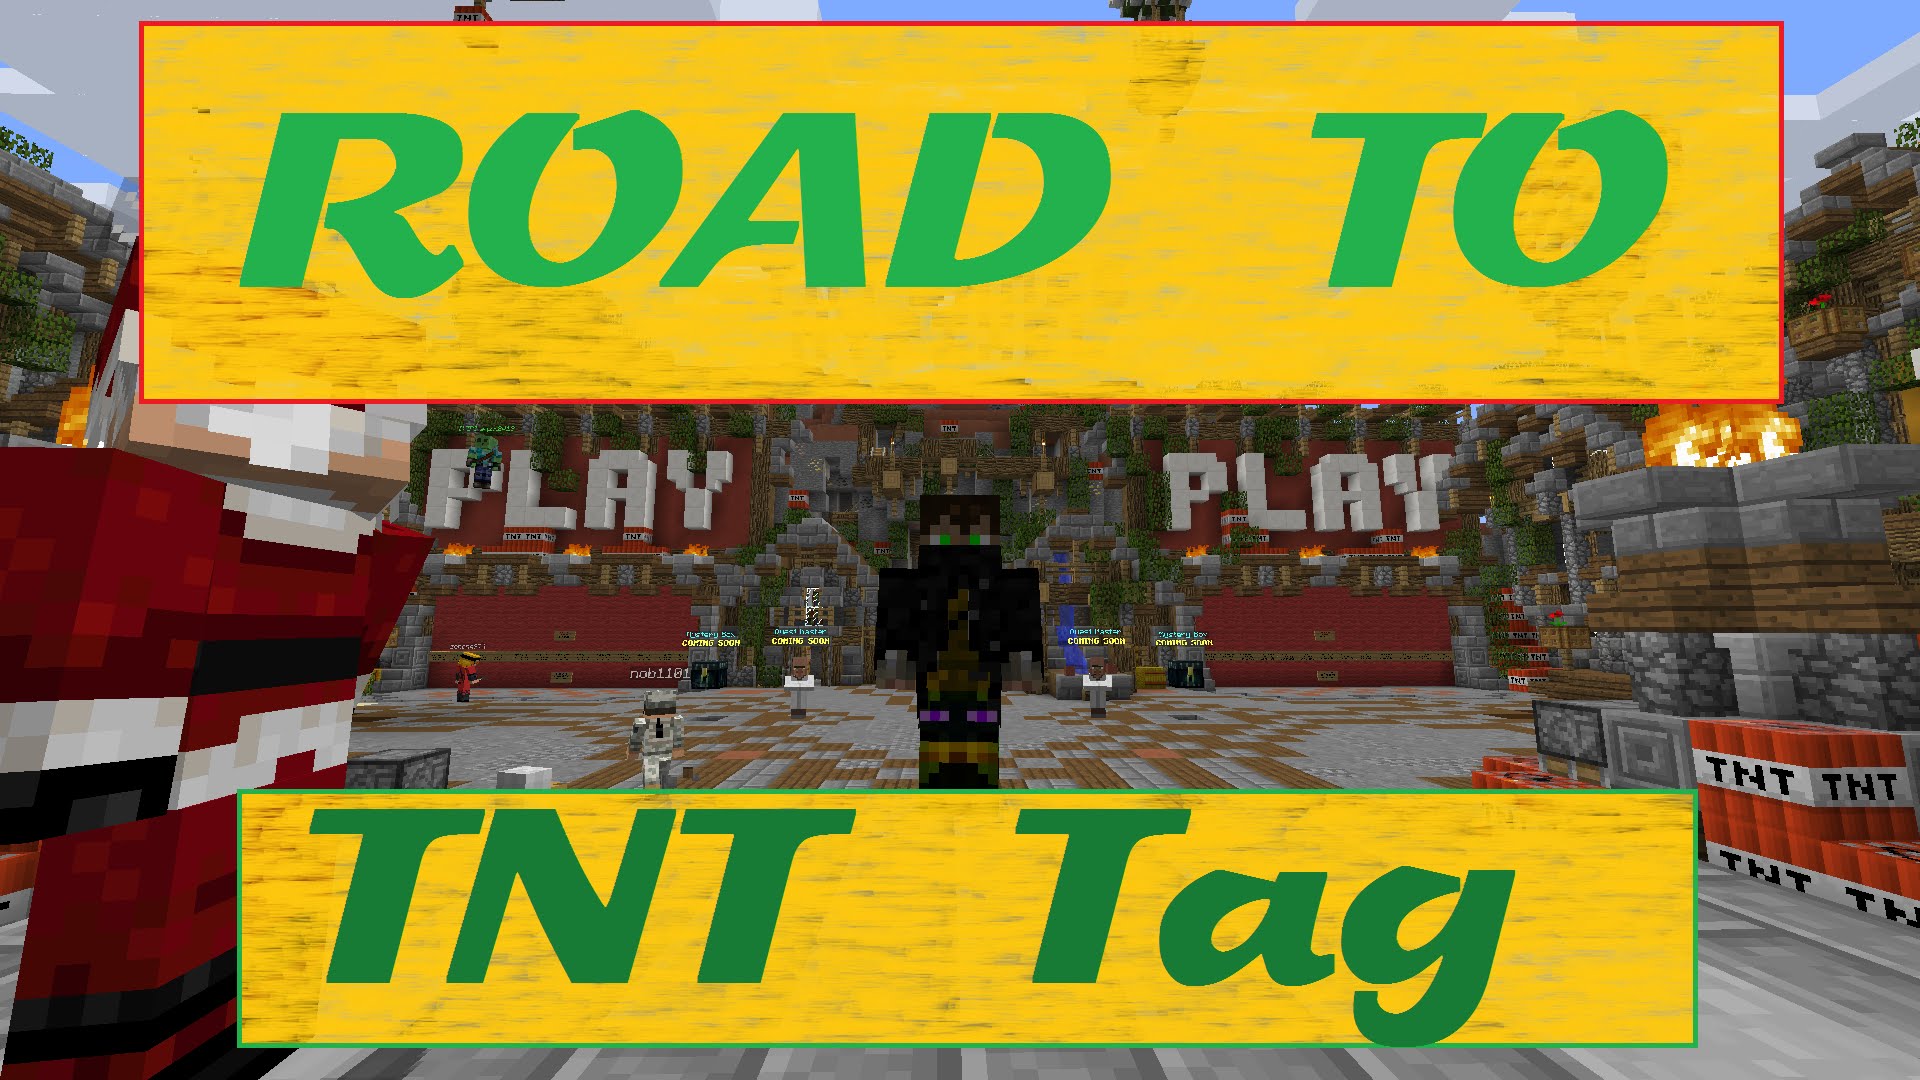 Road to win TNT Tag - Ep. 2 de Arandur